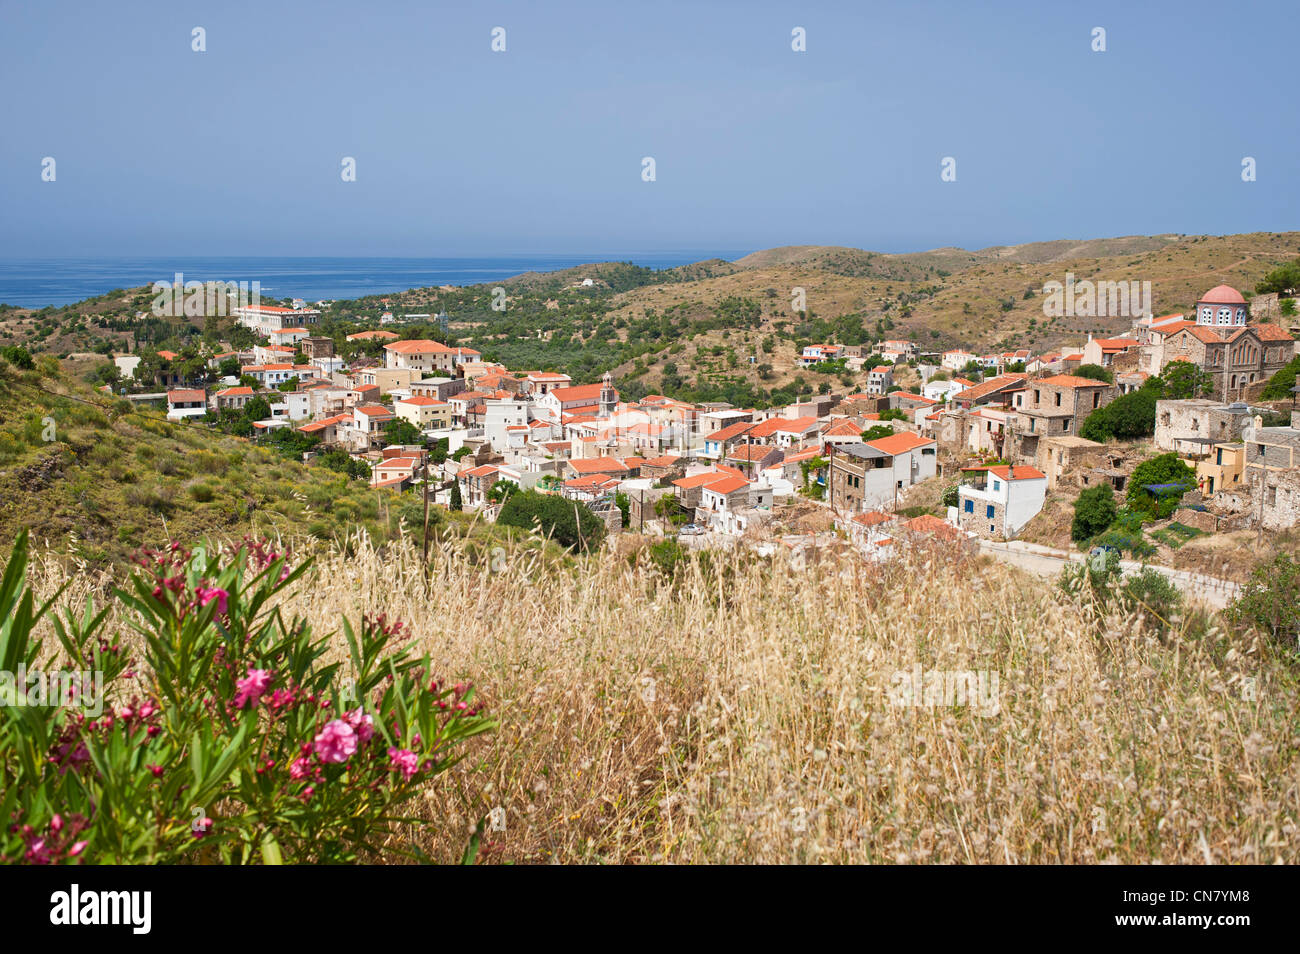 La Grèce, l'île de Chios, le pittoresque village de Volissos surmonté d'un château médiéval Banque D'Images